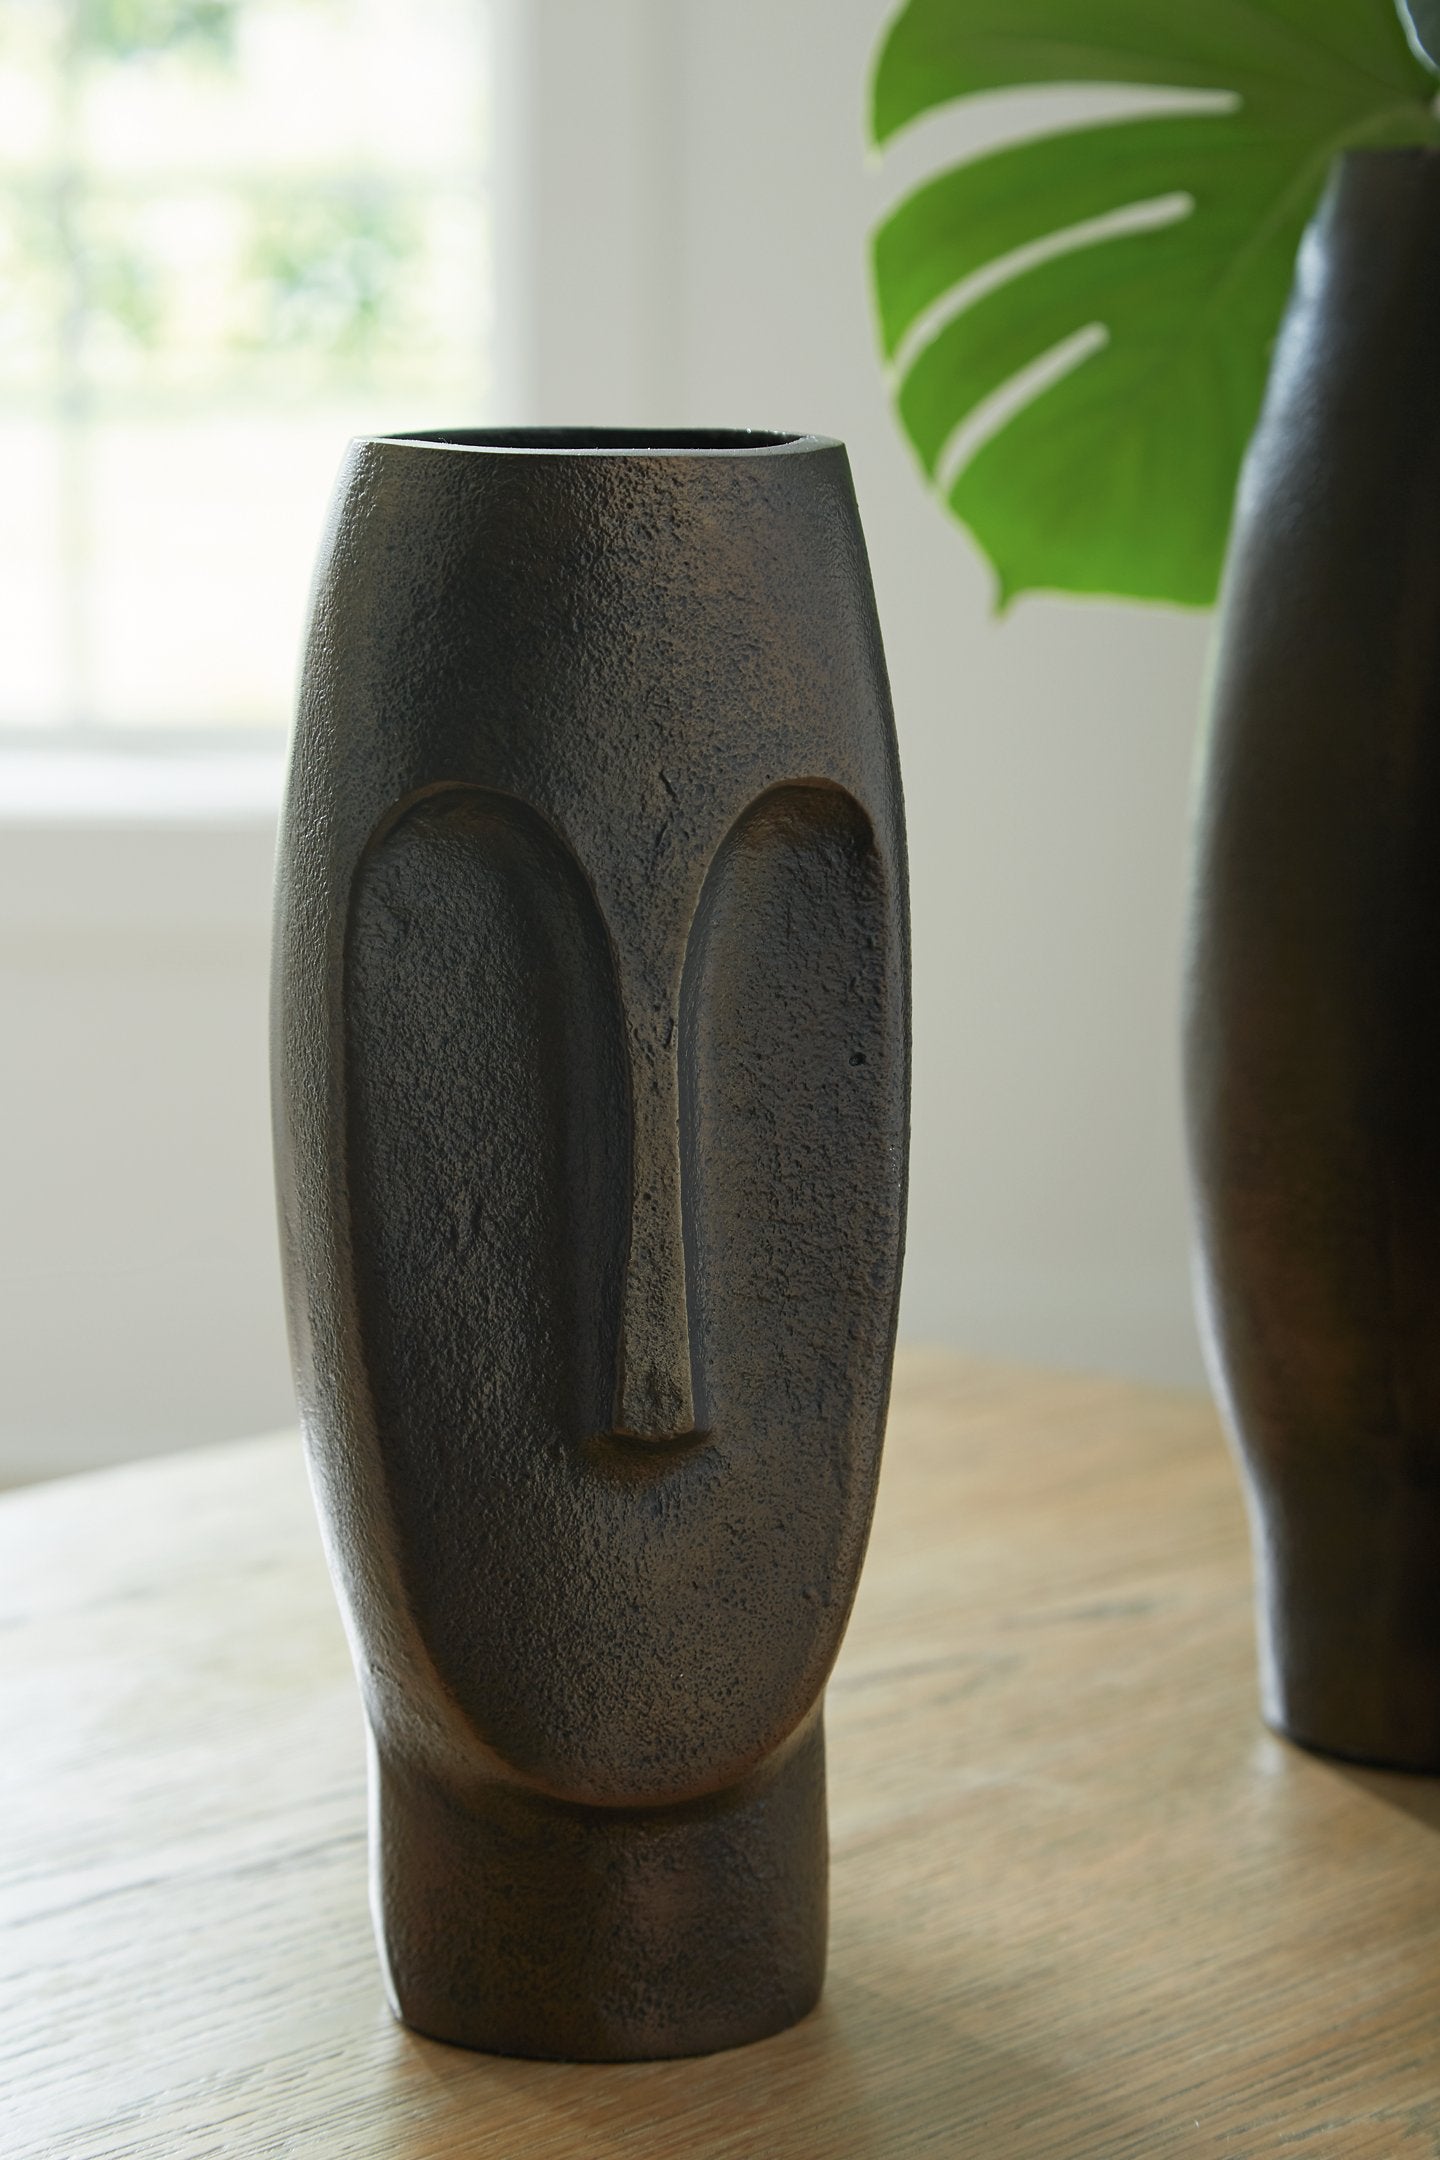 Elanman Vase - Half Price Furniture